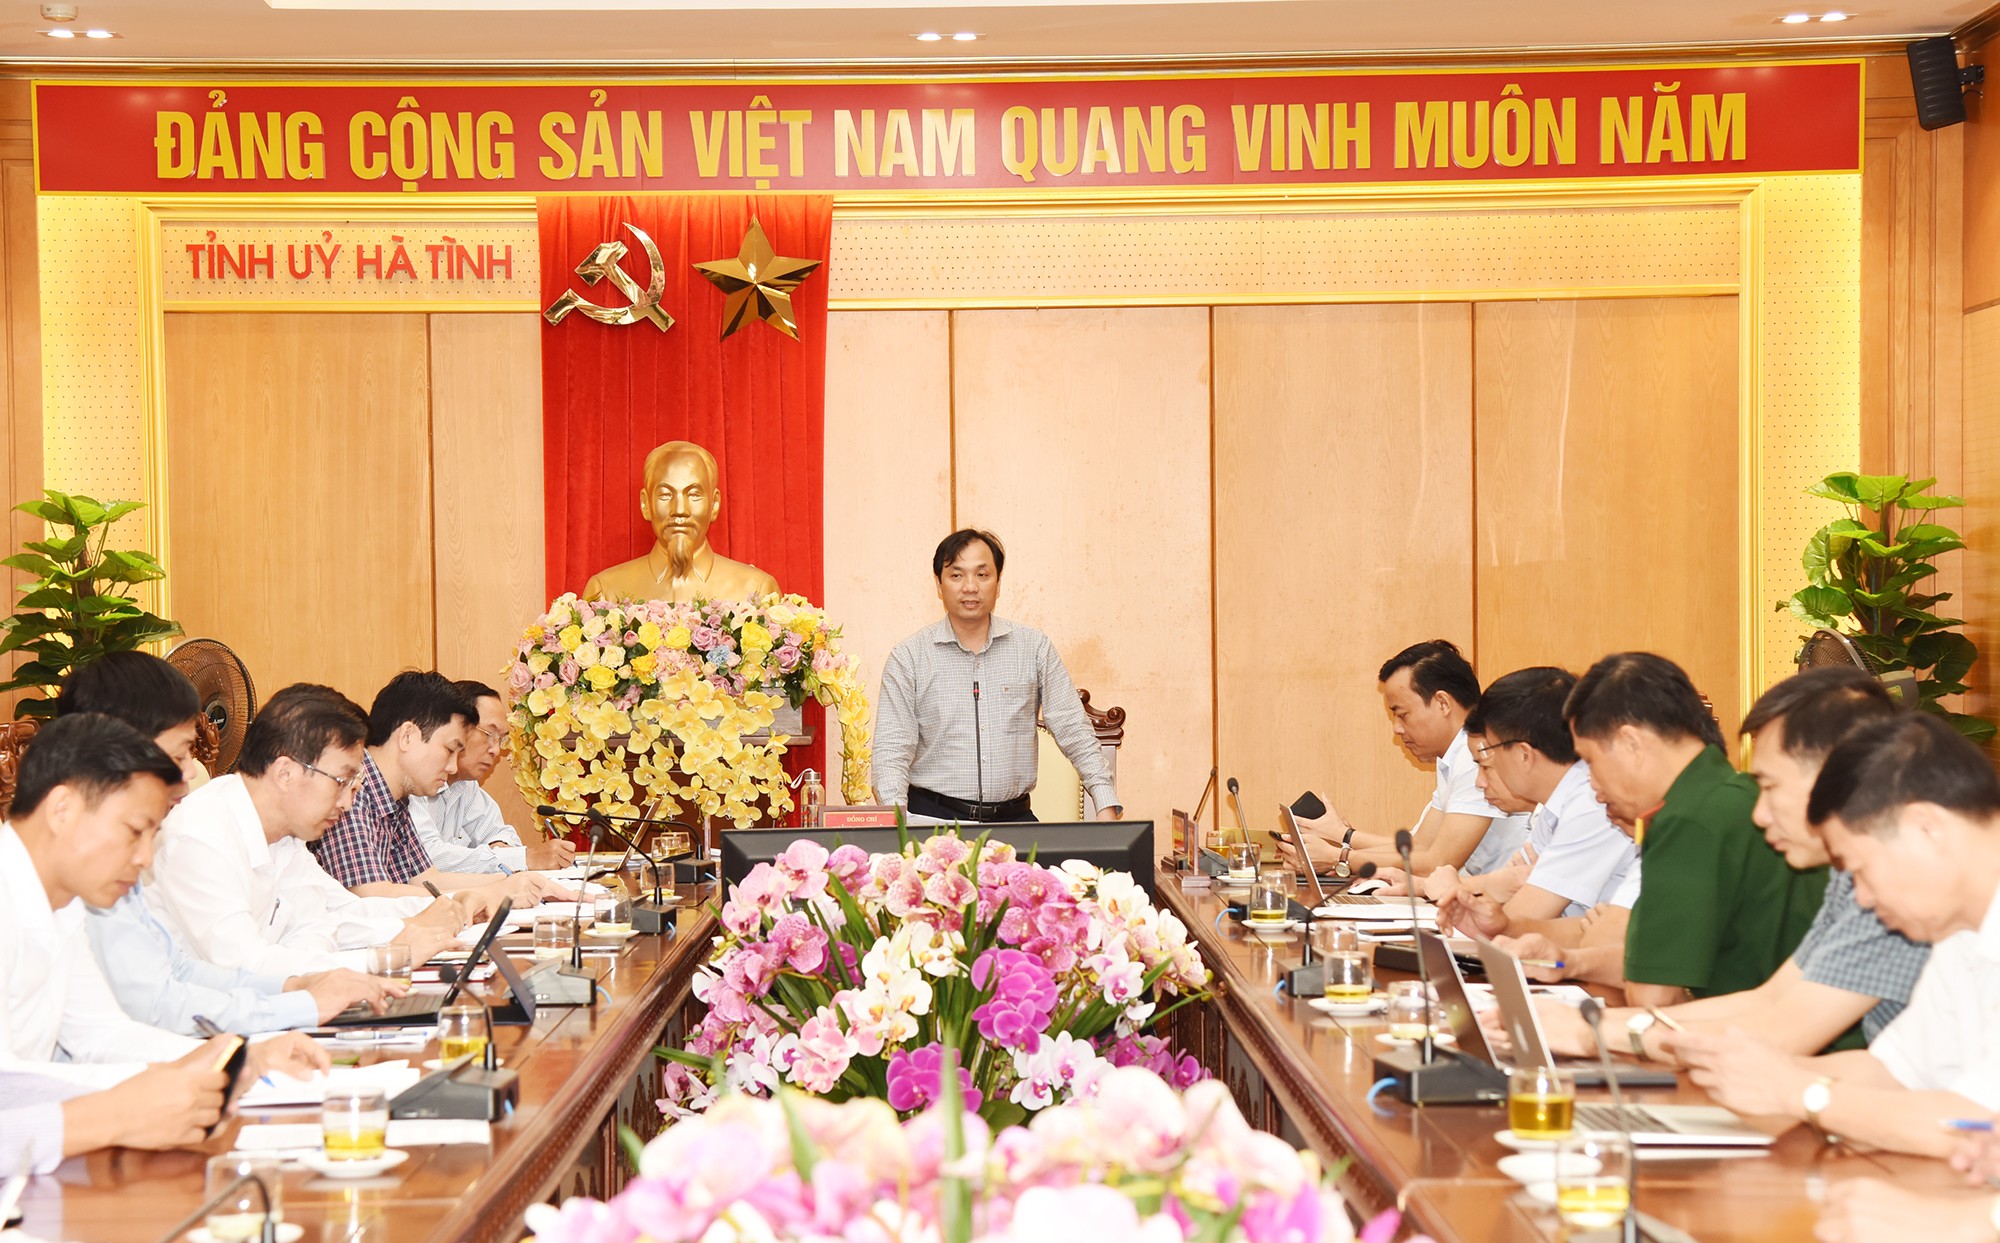 Phó Bí thư Thường trực Tỉnh ủy Hà Tĩnh Hoàng Trung Dũng chủ trì Hội nghị rà soát công tác chuẩn bị Đại hội Đảng bộ tỉnh.